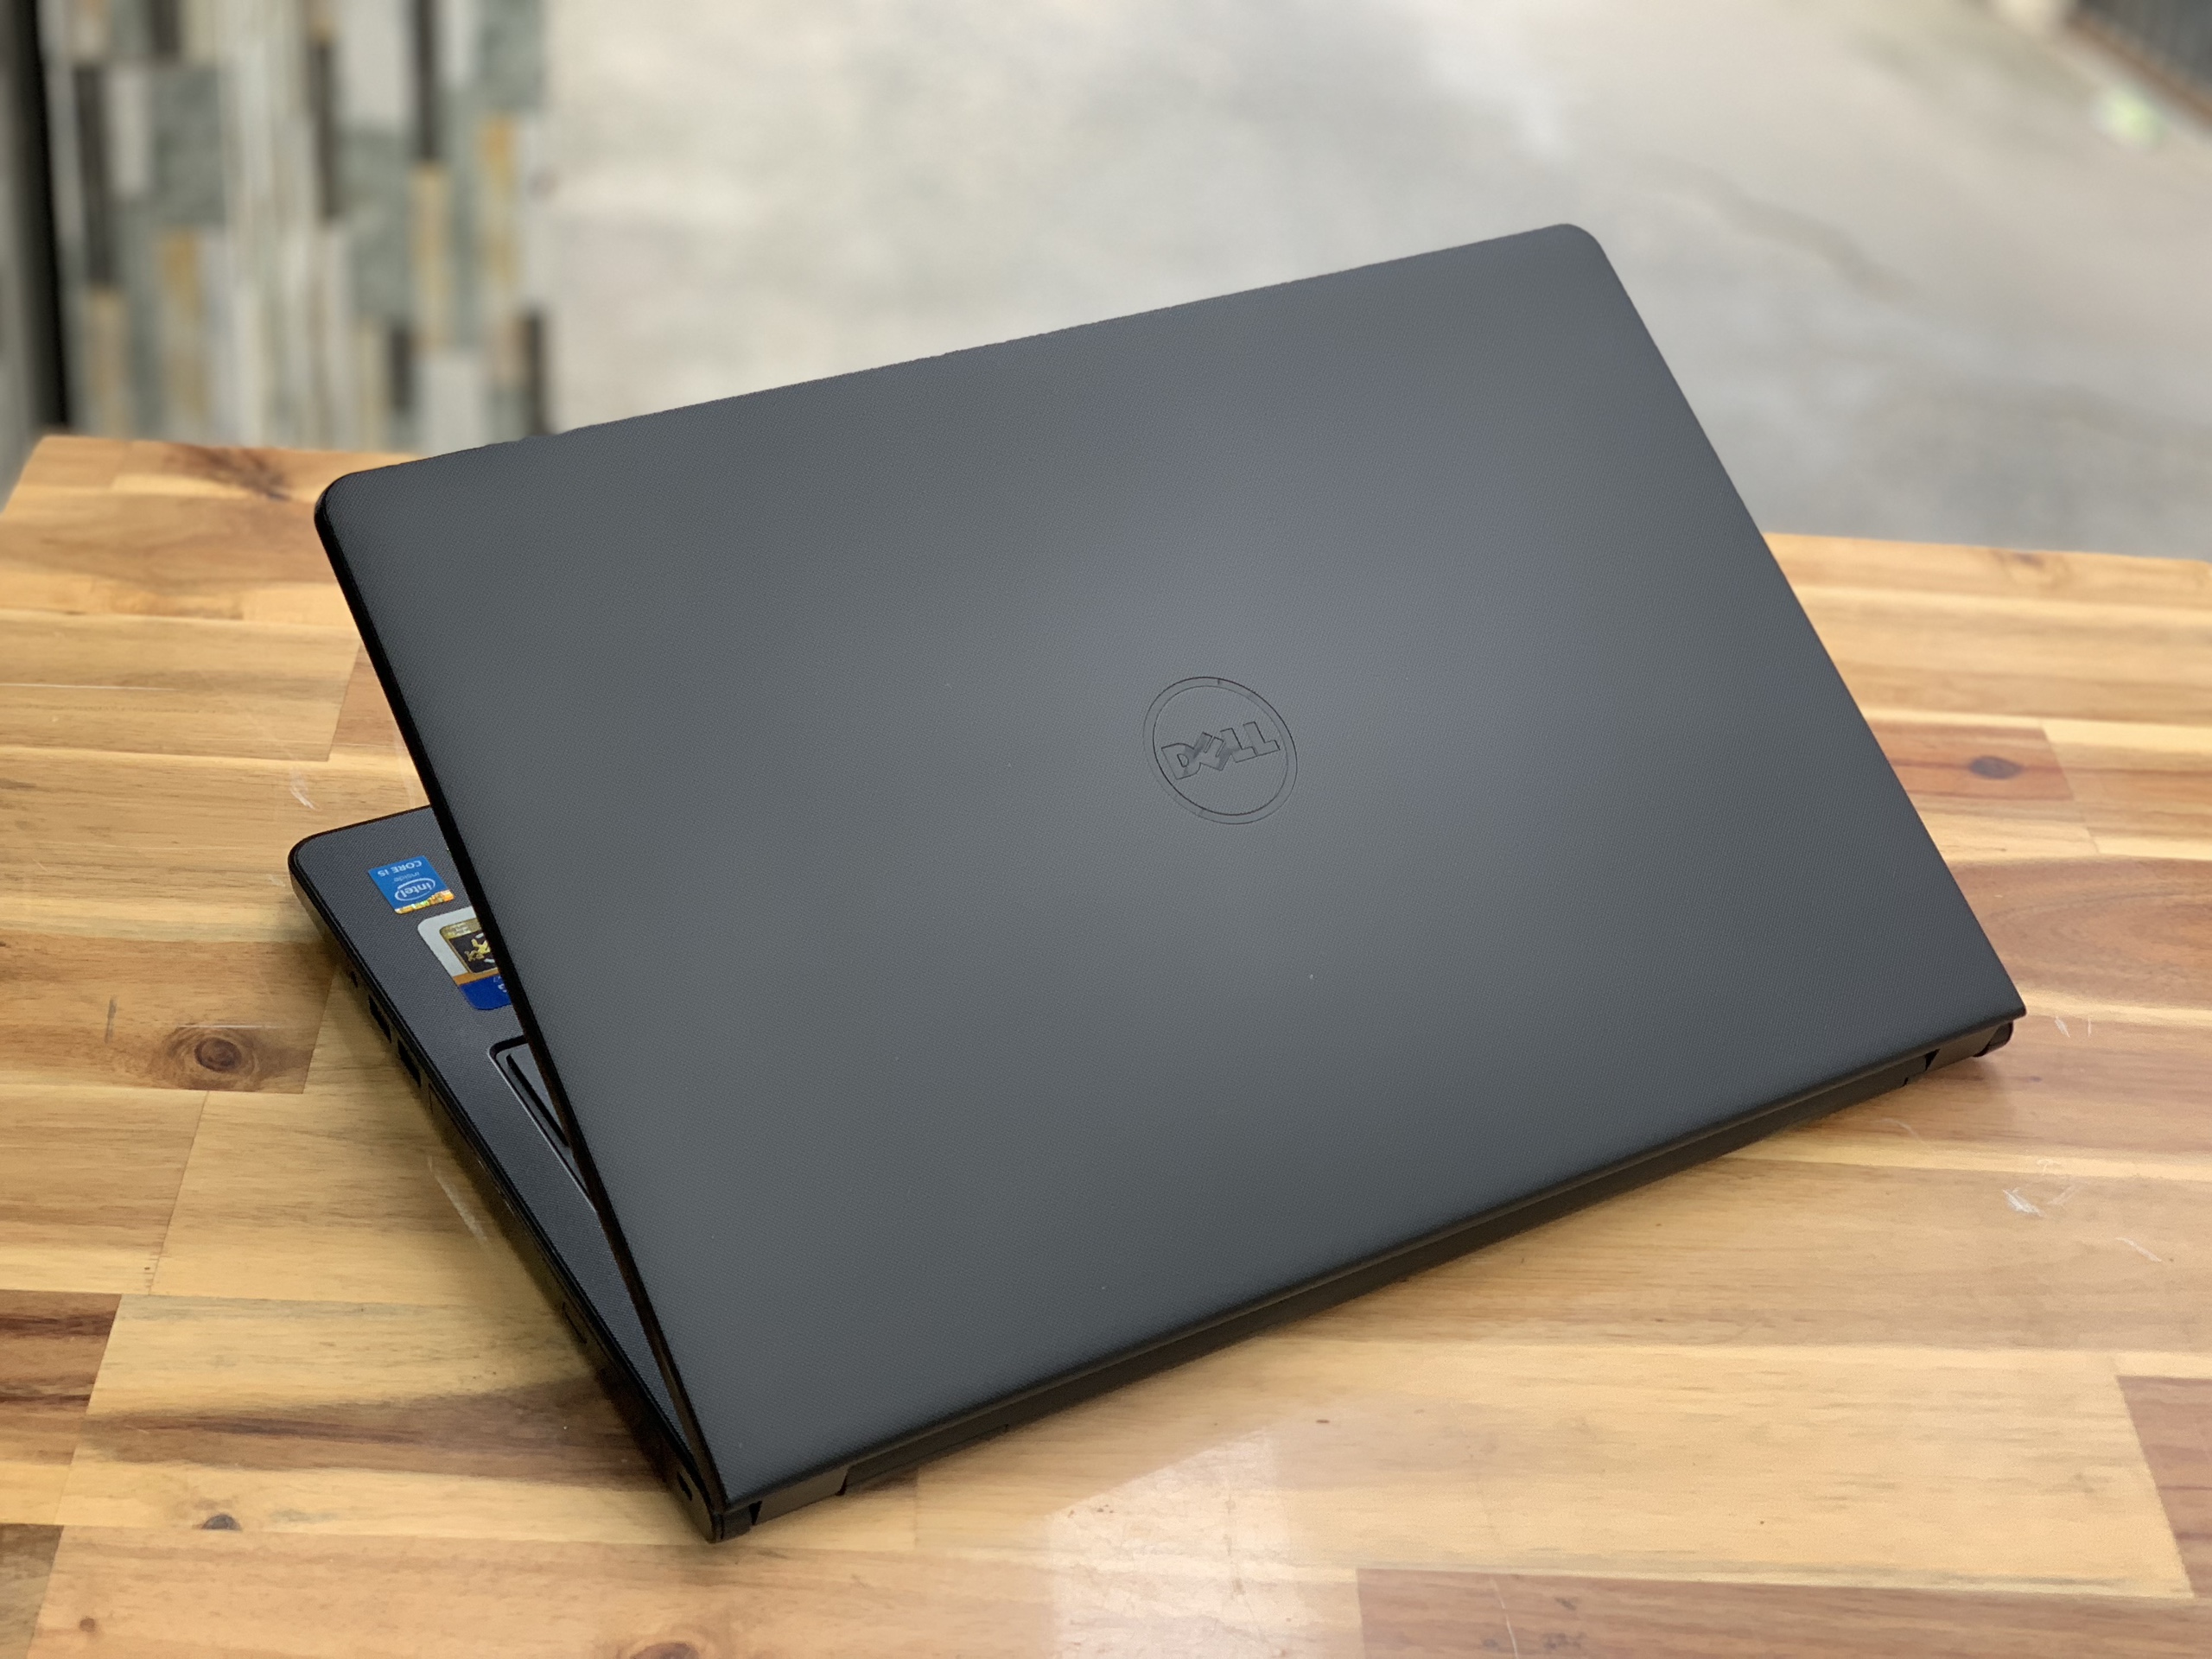 Laptop Dell Inspiron 3542, i3 4005U 4G 500G đẹp zin 100% Giá rẻ4